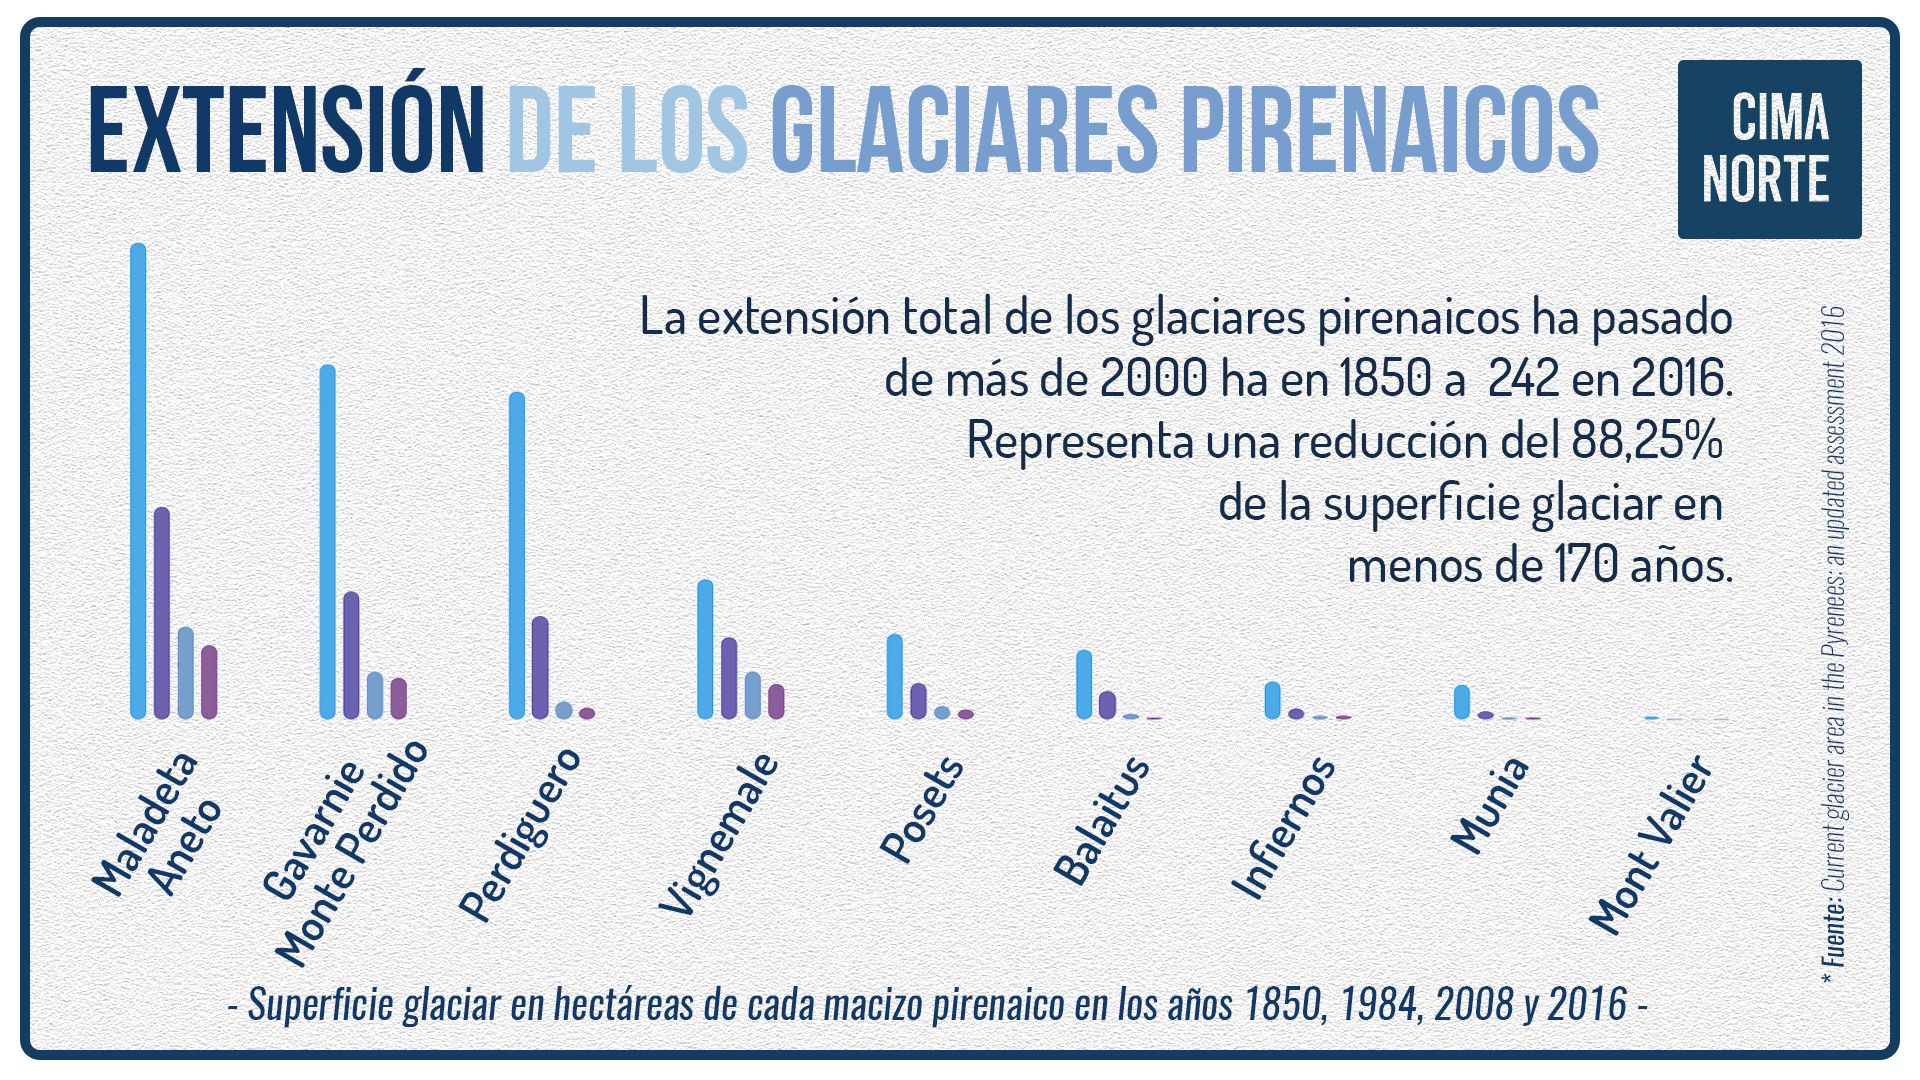 extensión y reducción de los glaciares pirenaicos por macizo